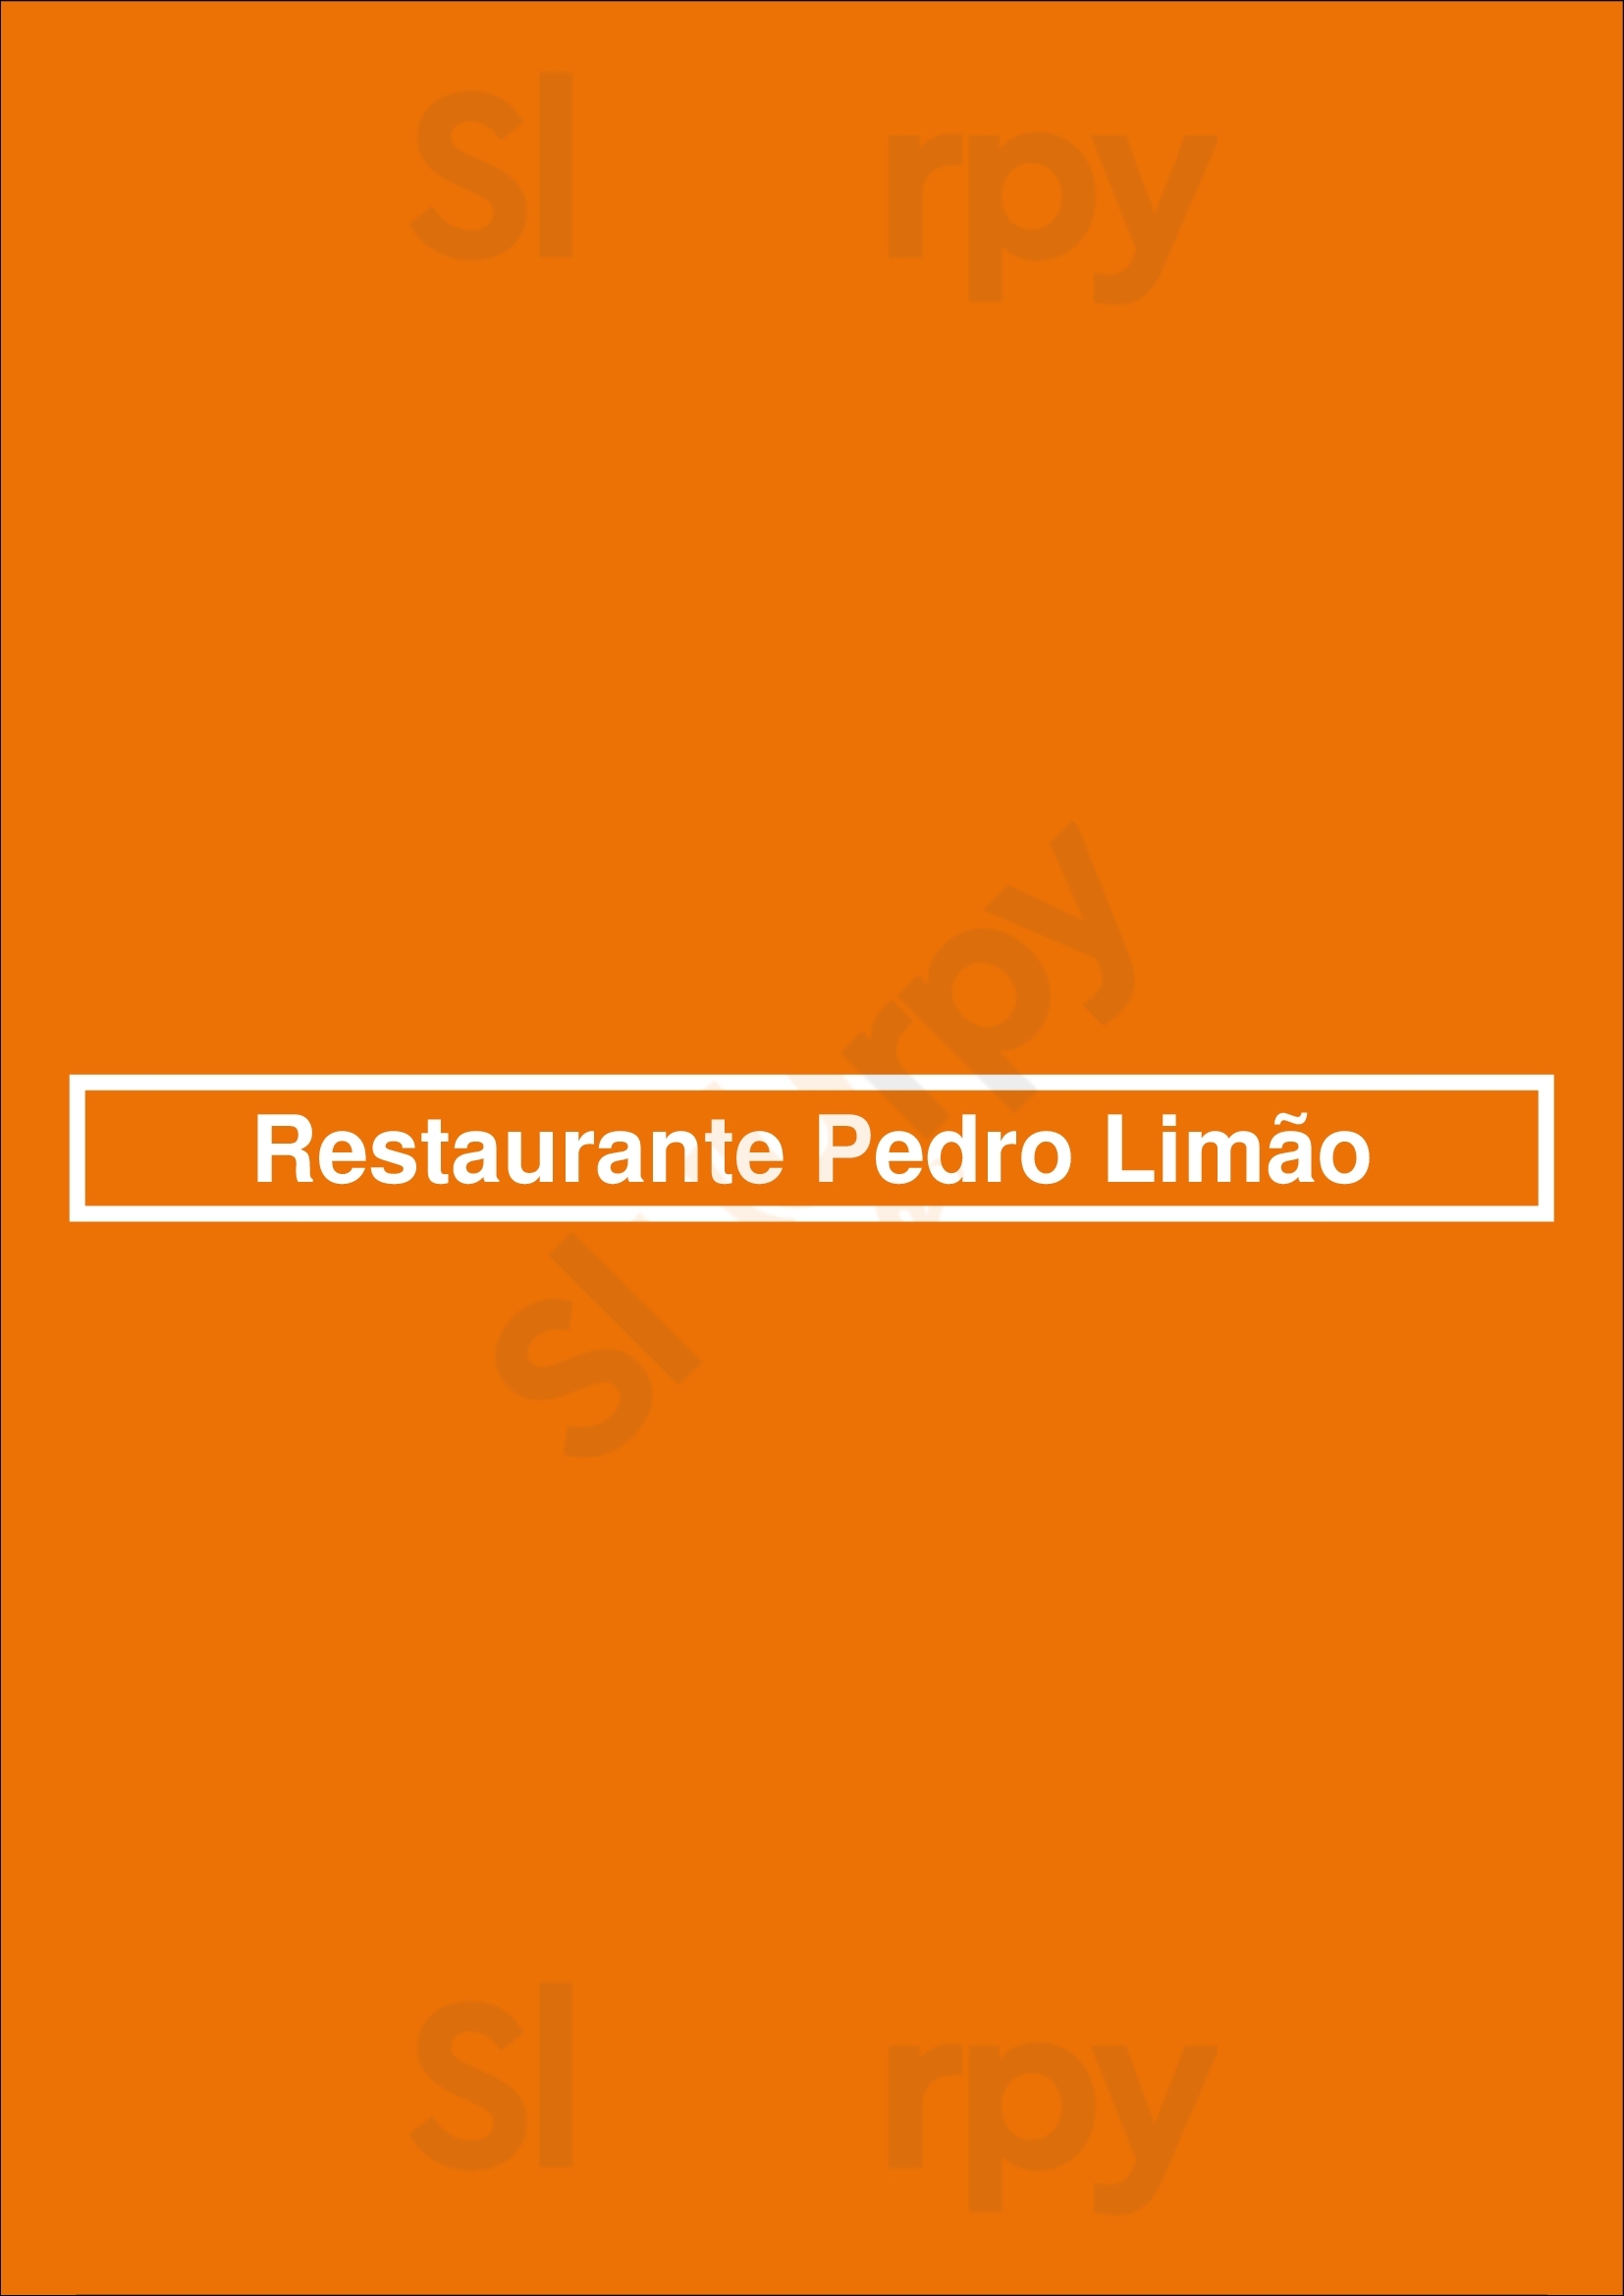 Restaurante Pedro Limão Porto Menu - 1